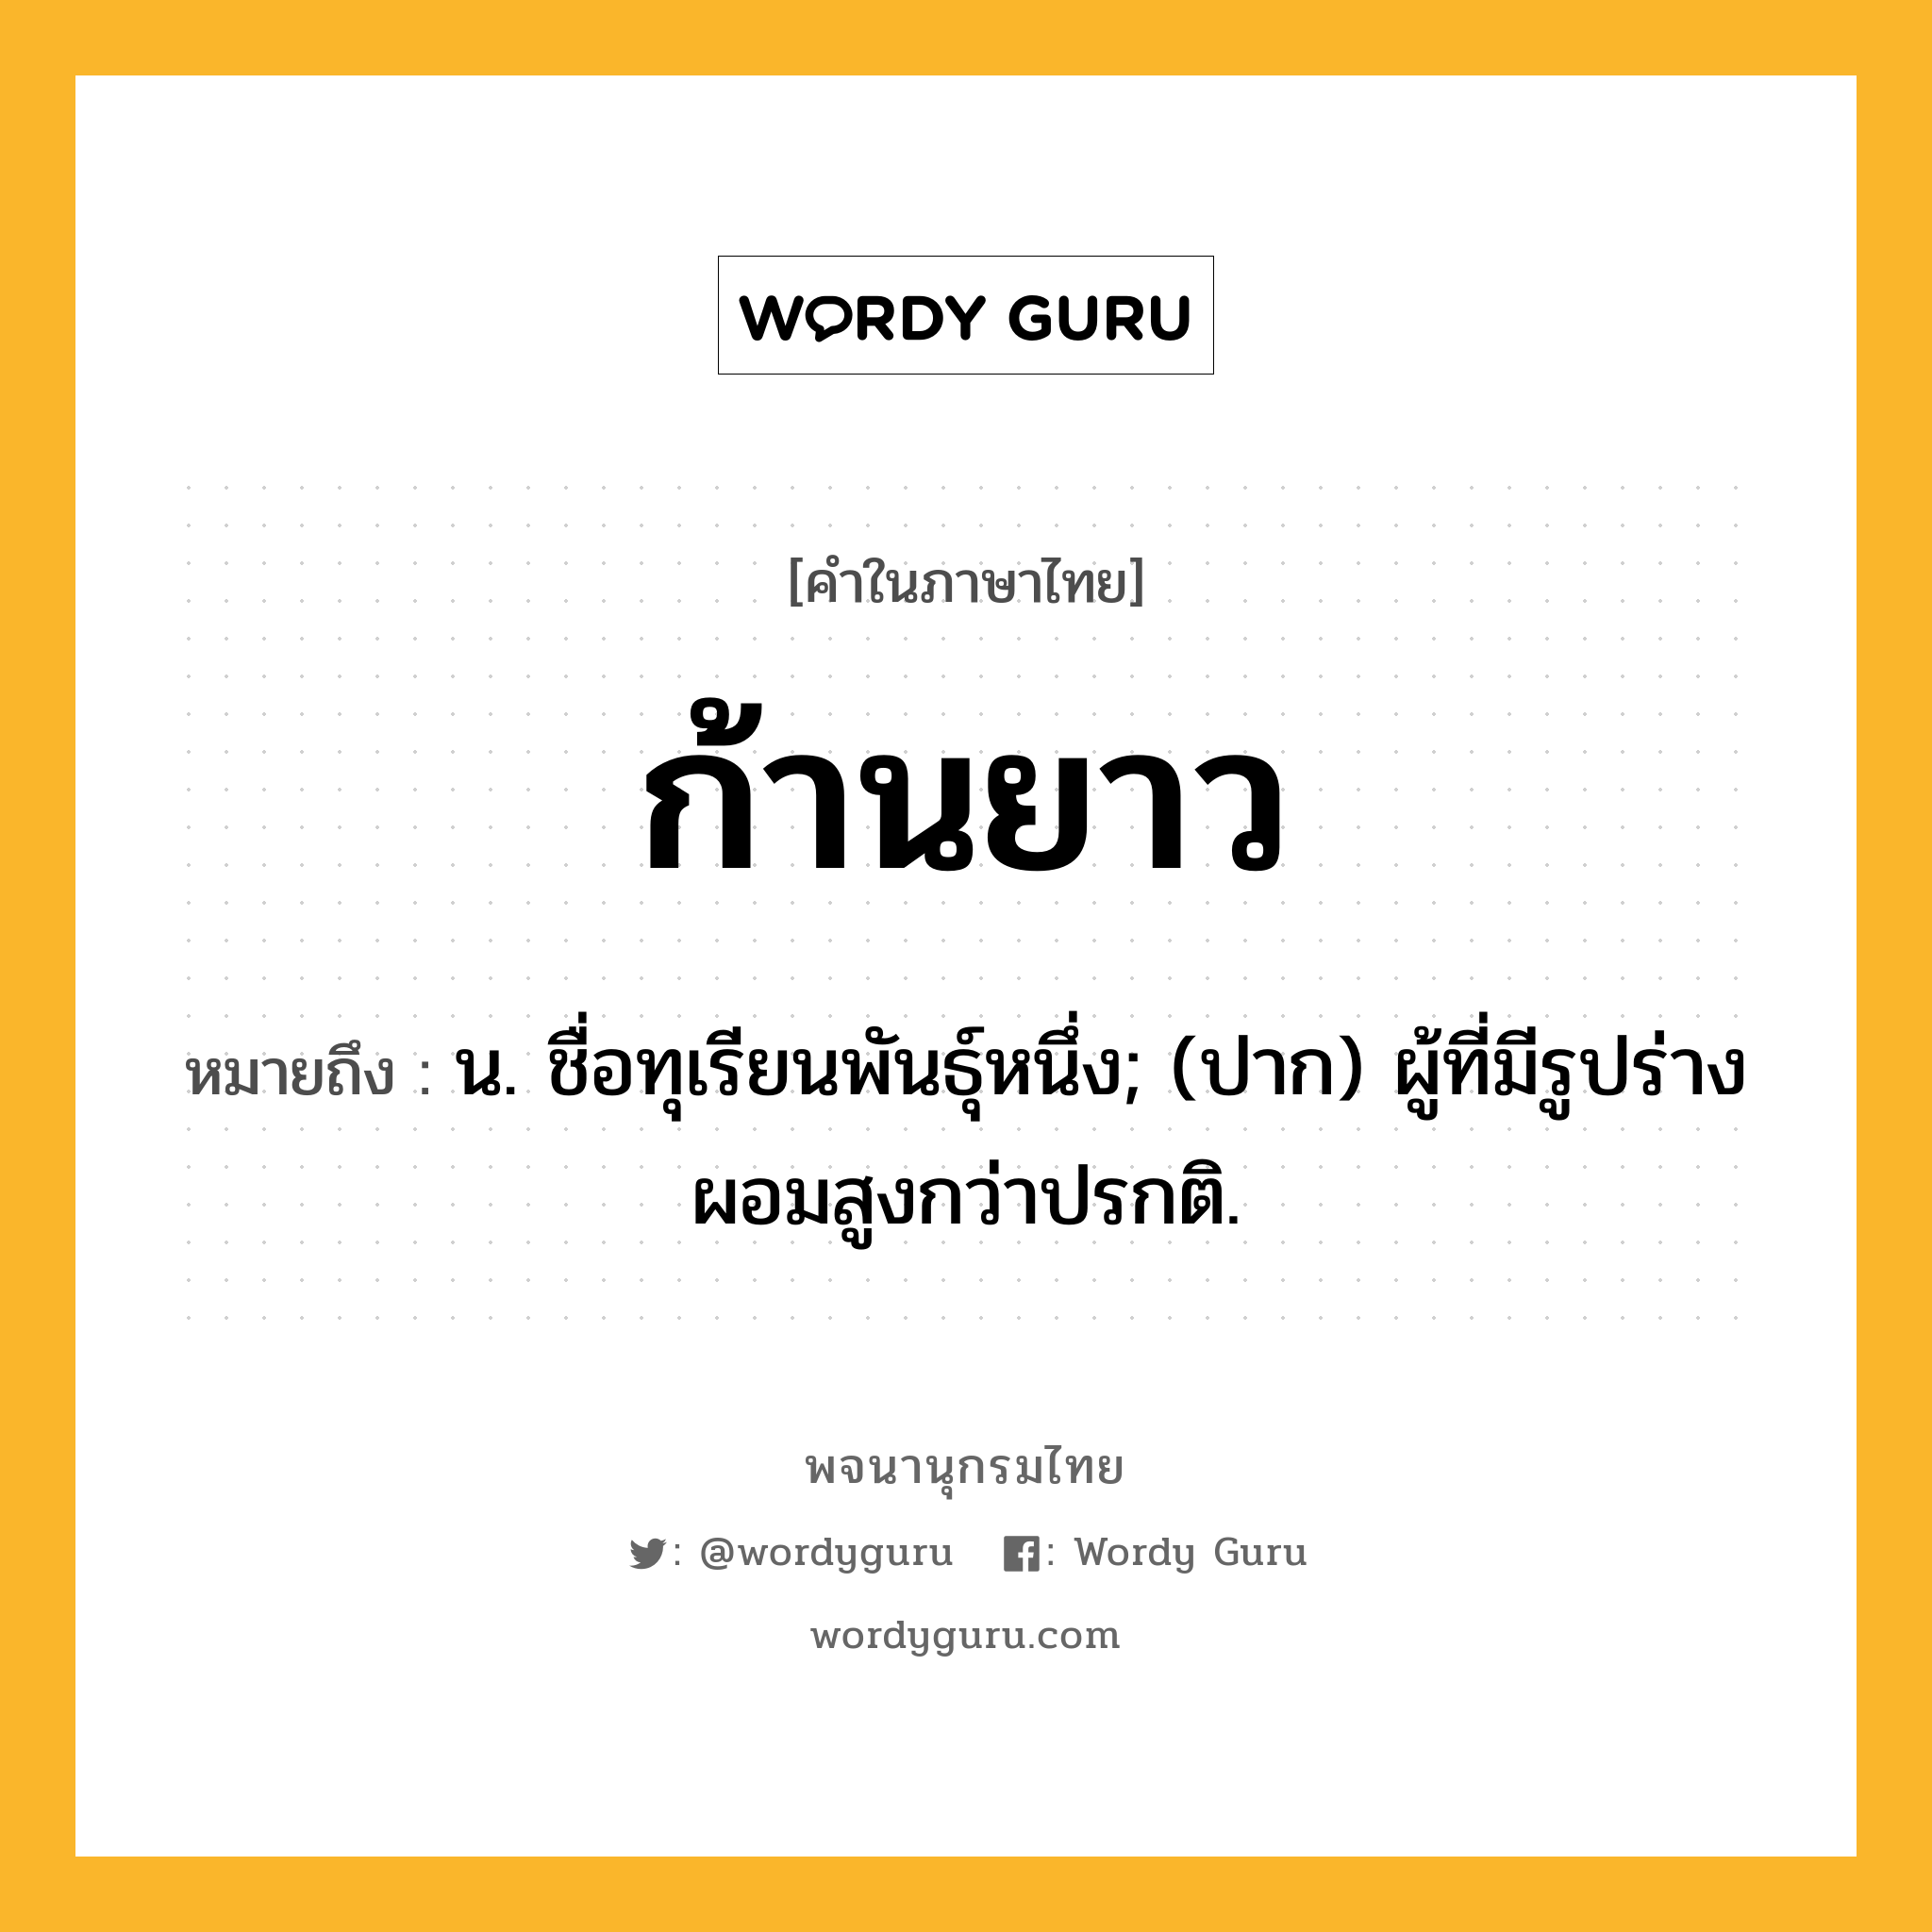 ก้านยาว ความหมาย หมายถึงอะไร?, คำในภาษาไทย ก้านยาว หมายถึง น. ชื่อทุเรียนพันธุ์หนึ่ง; (ปาก) ผู้ที่มีรูปร่างผอมสูงกว่าปรกติ.